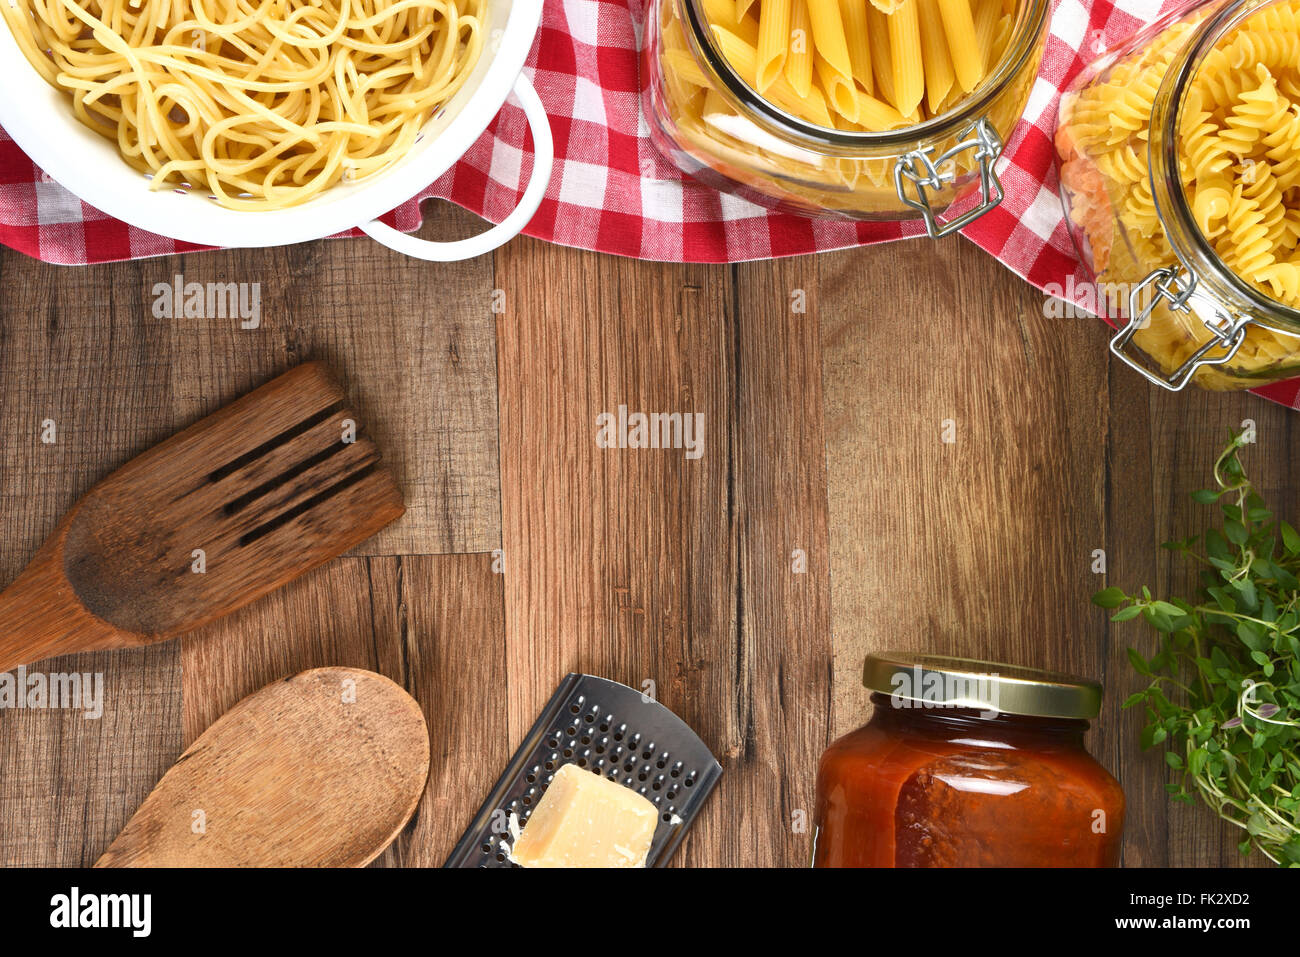 Vogelperspektive Blick auf eine Auswahl an Pasta, Parmesan, Käse, Reibe, Glas mit Sauce, Utensilien und Kräutern auf einer Holz Küche Tisch wi Stockfoto